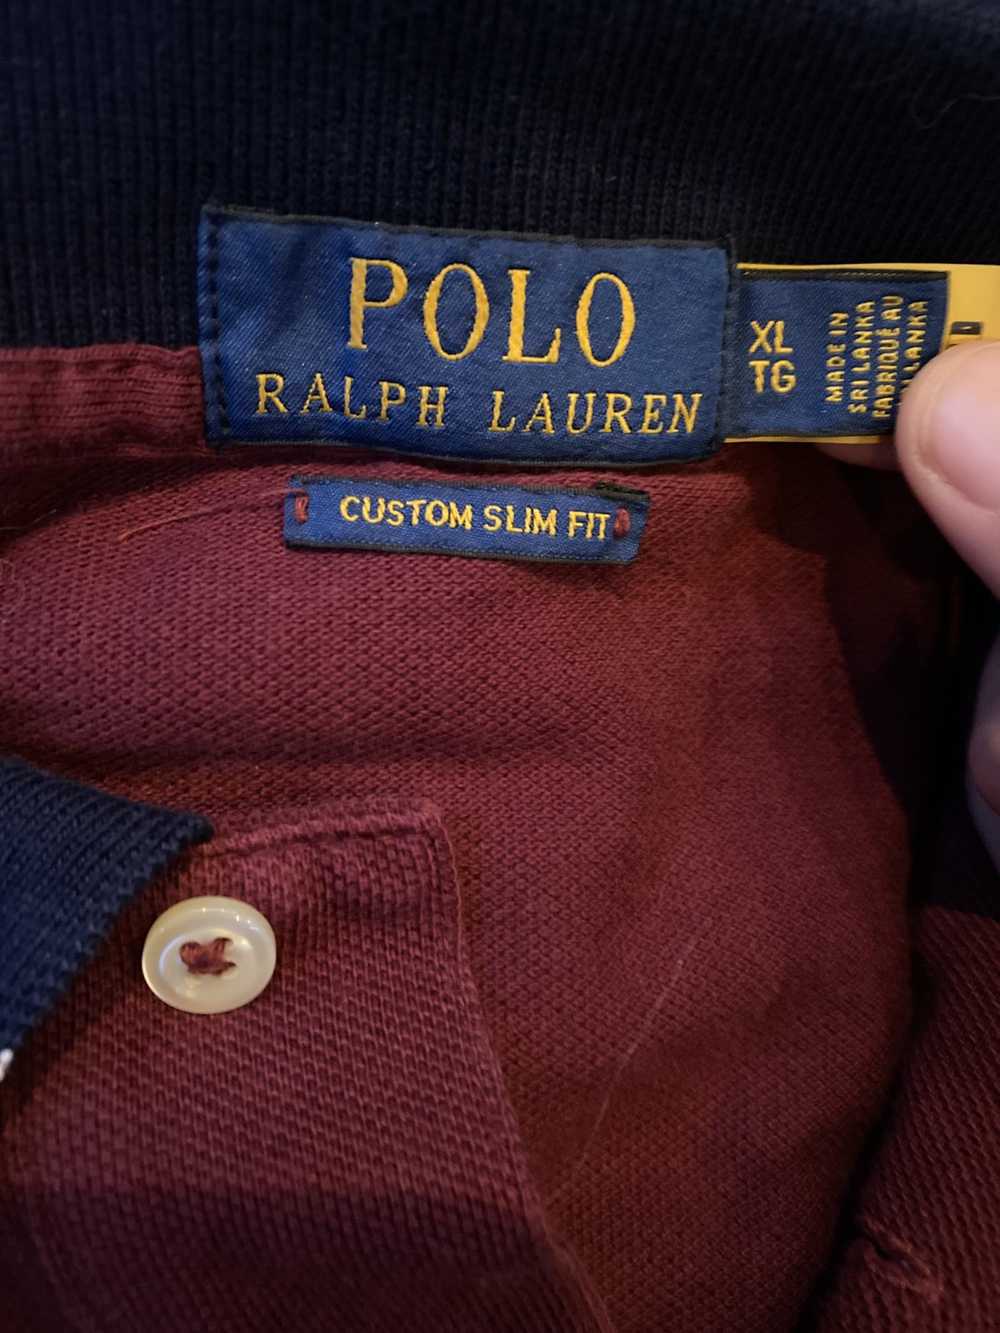 Polo Ralph Lauren Polo Ralph Lauren Polo - image 4